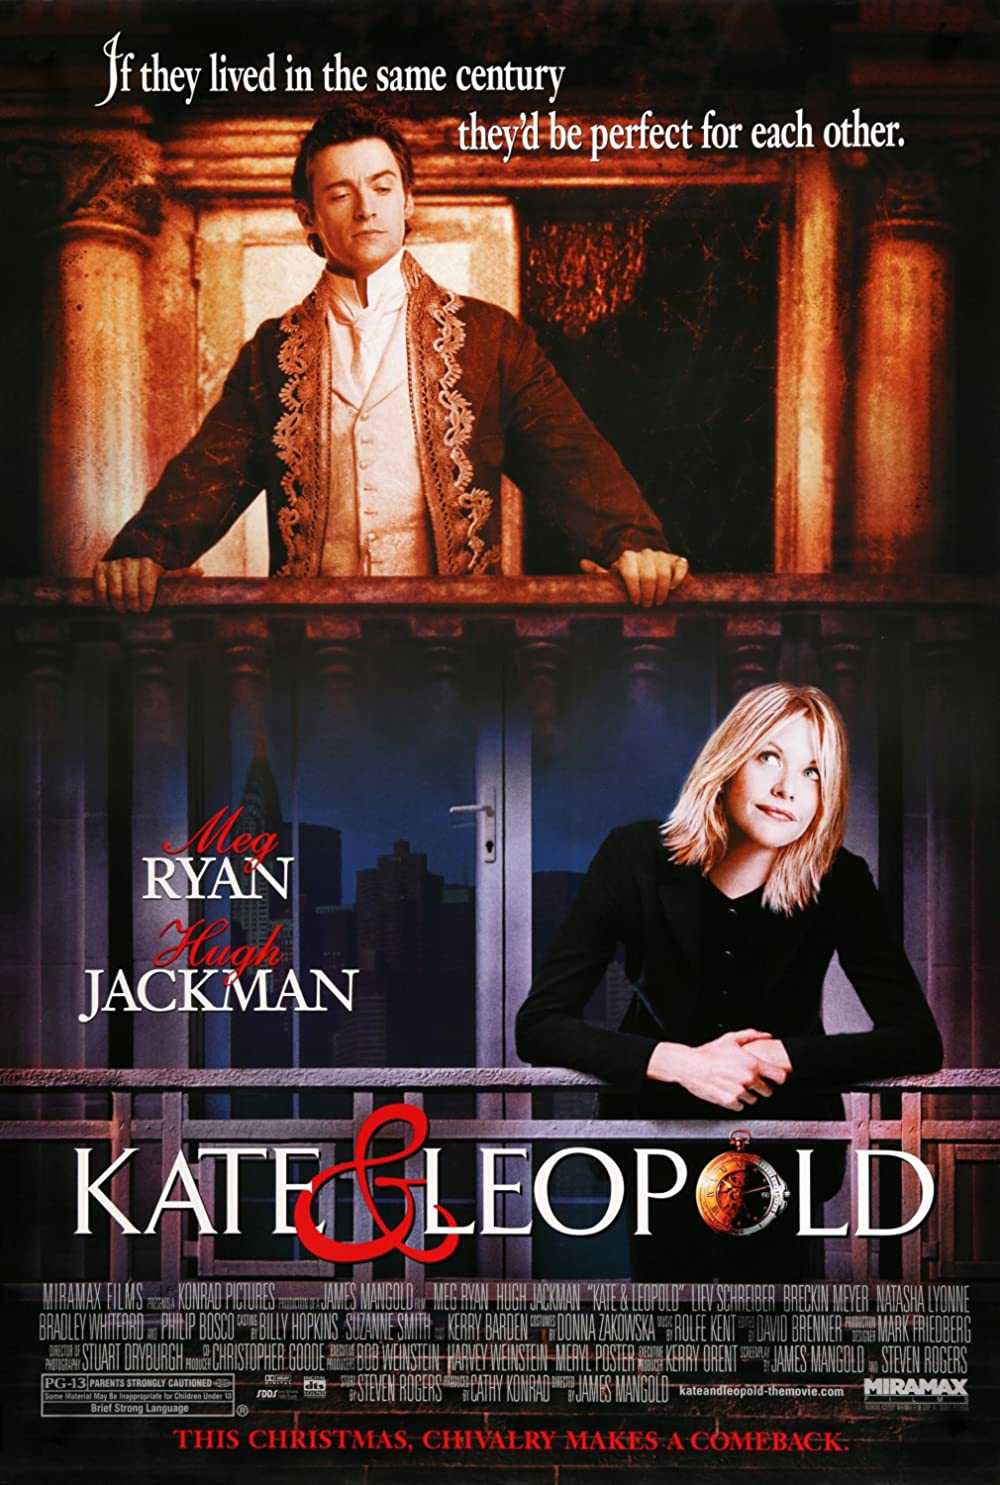 Kate và leopold - Kate & leopold